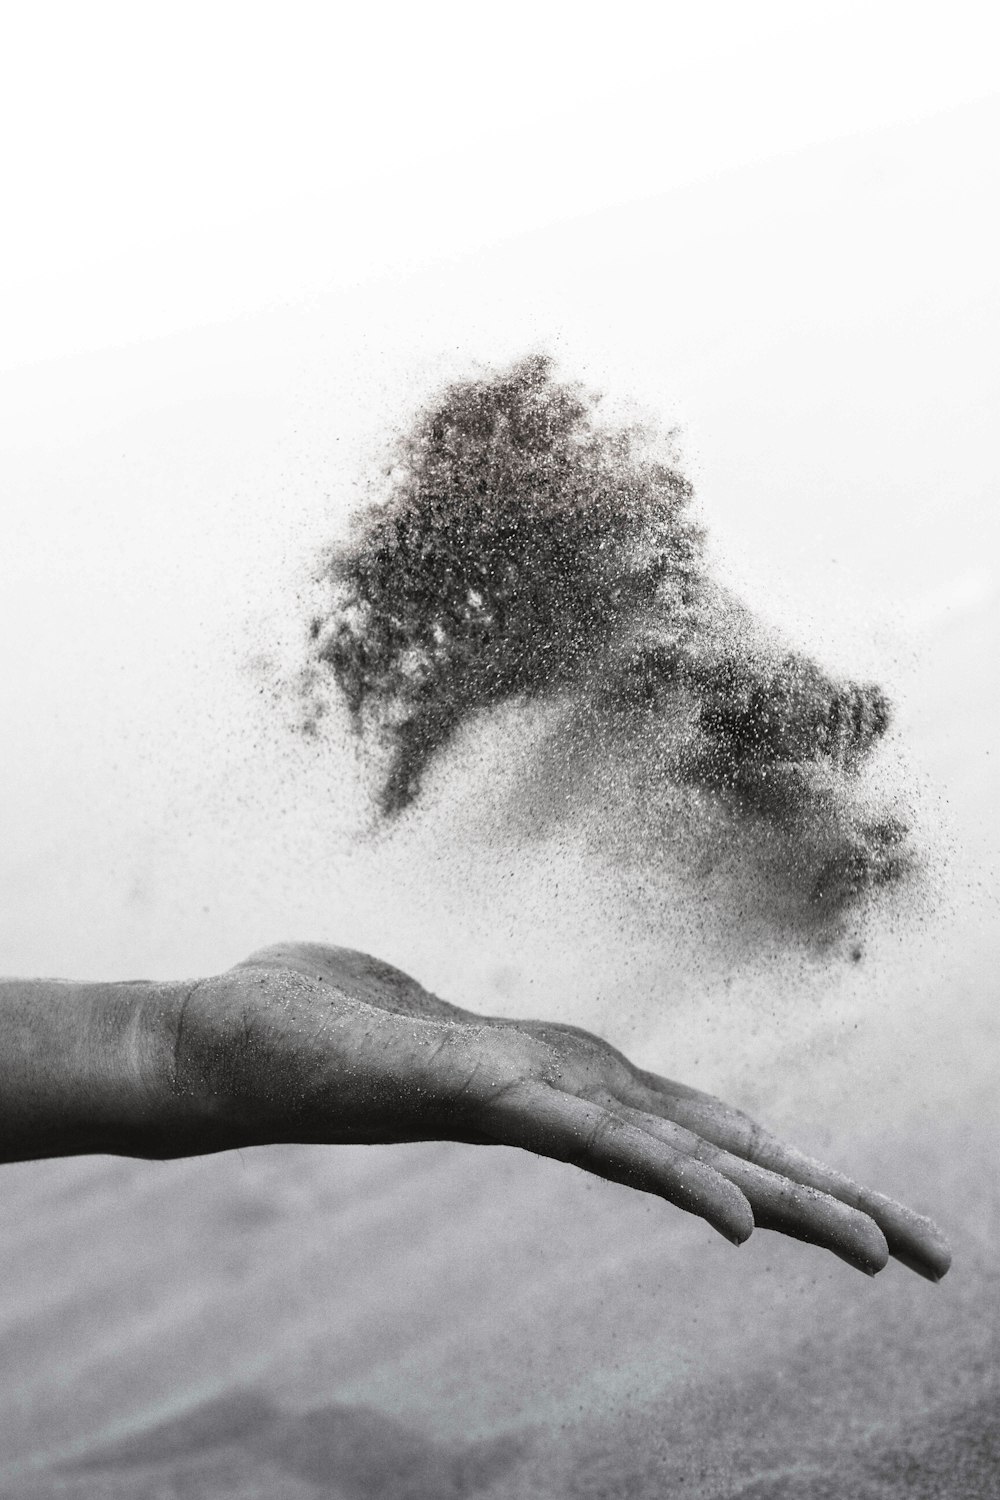 Fotografia in scala di grigi della mano della persona che sparge sabbia